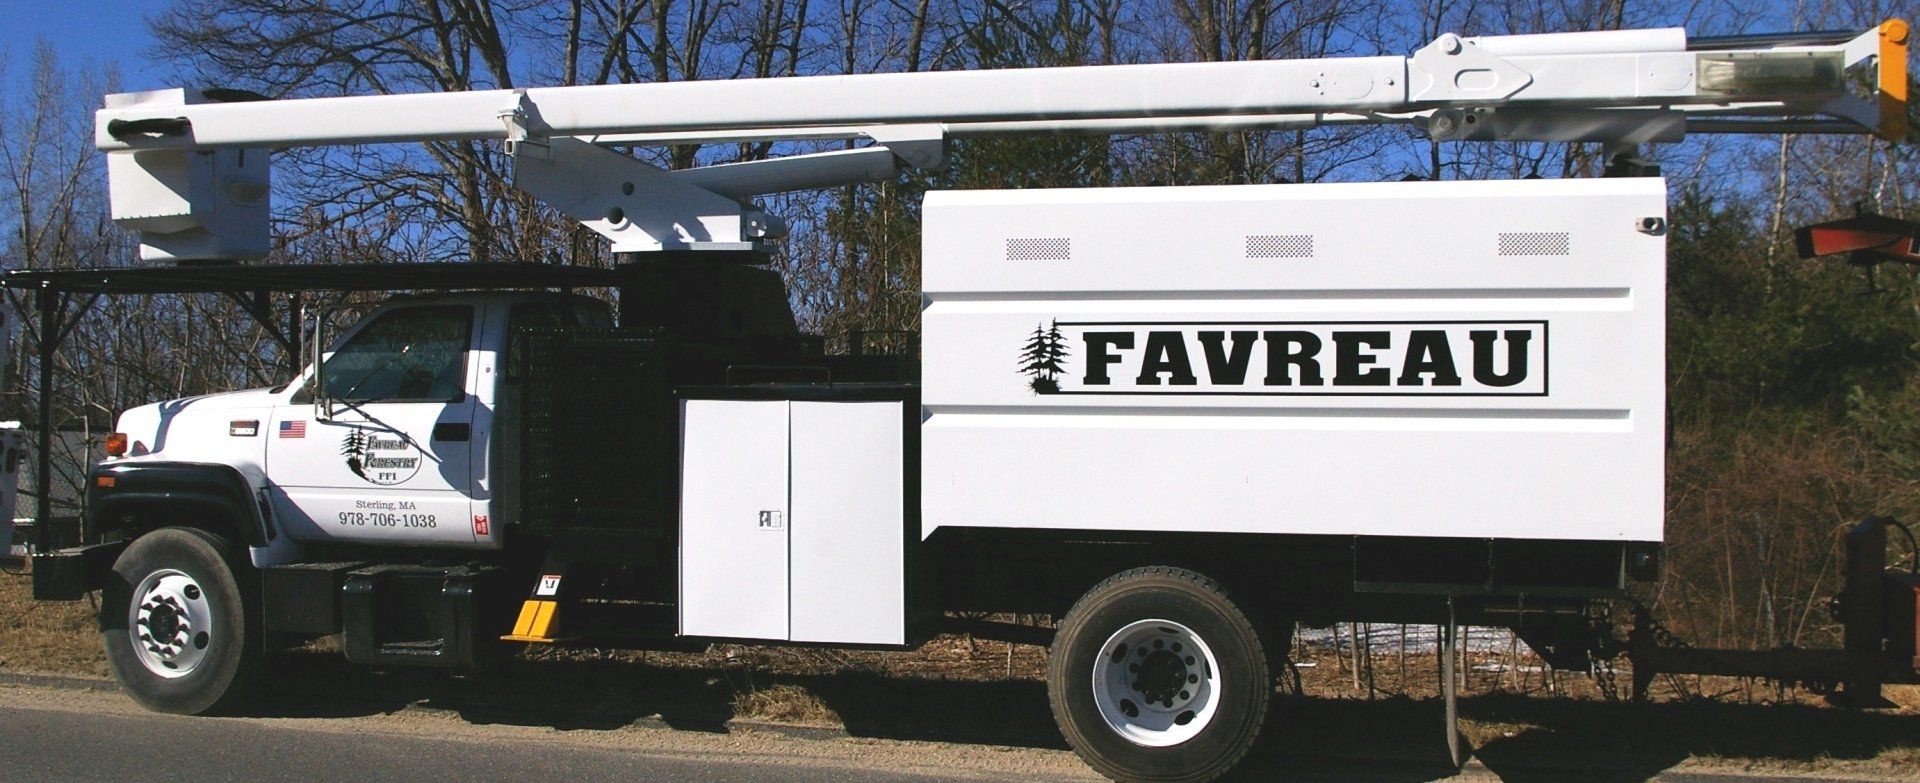 Favreau Forestry truck